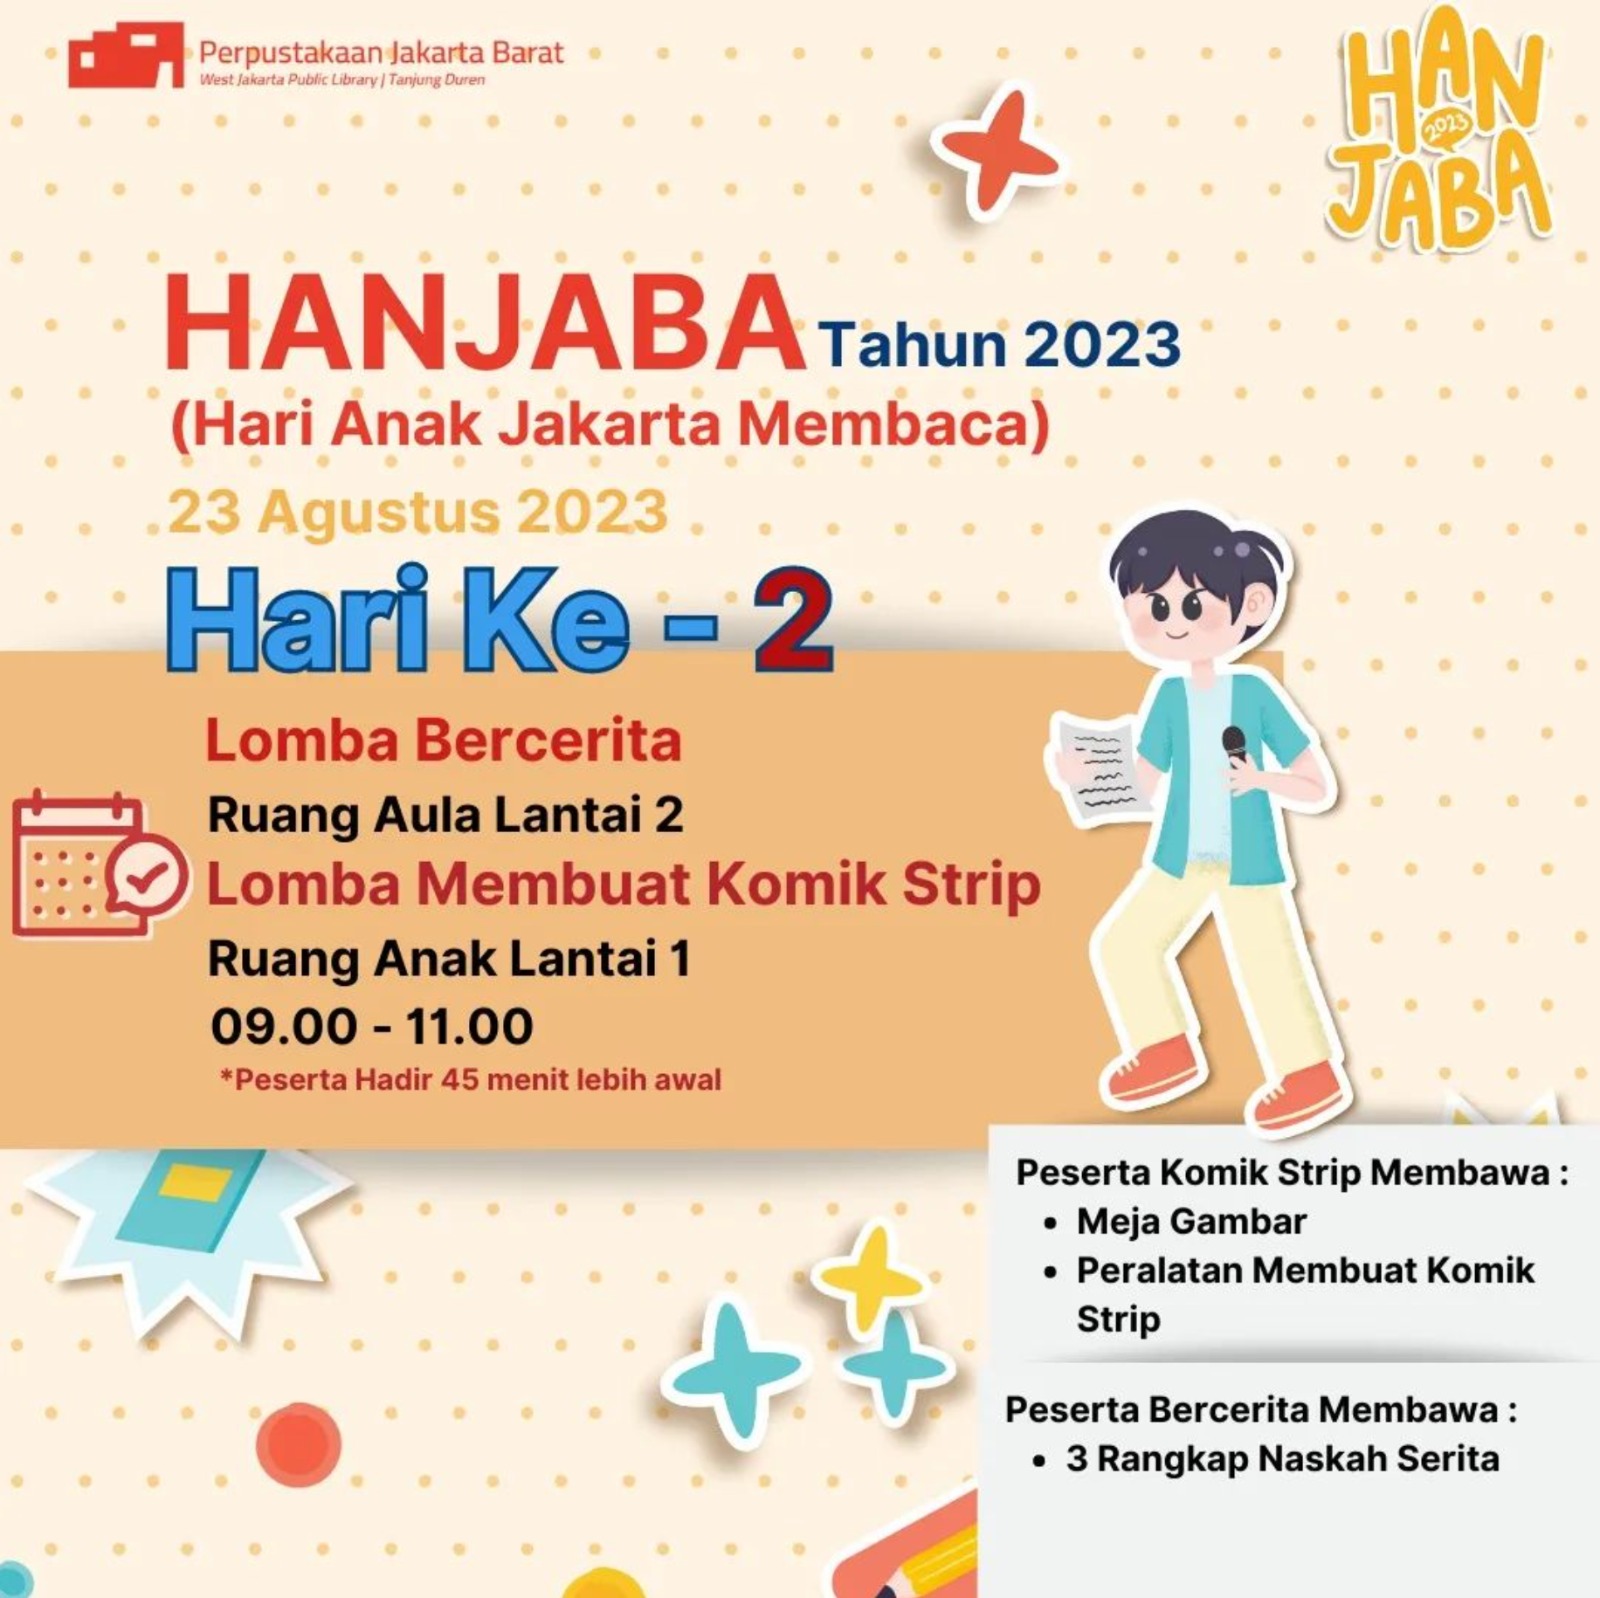 Lomba Bercerita & Lomba Membuat Komik Strip Hari Anak Jakarta Membaca (HANJABA) Jakarta Barat